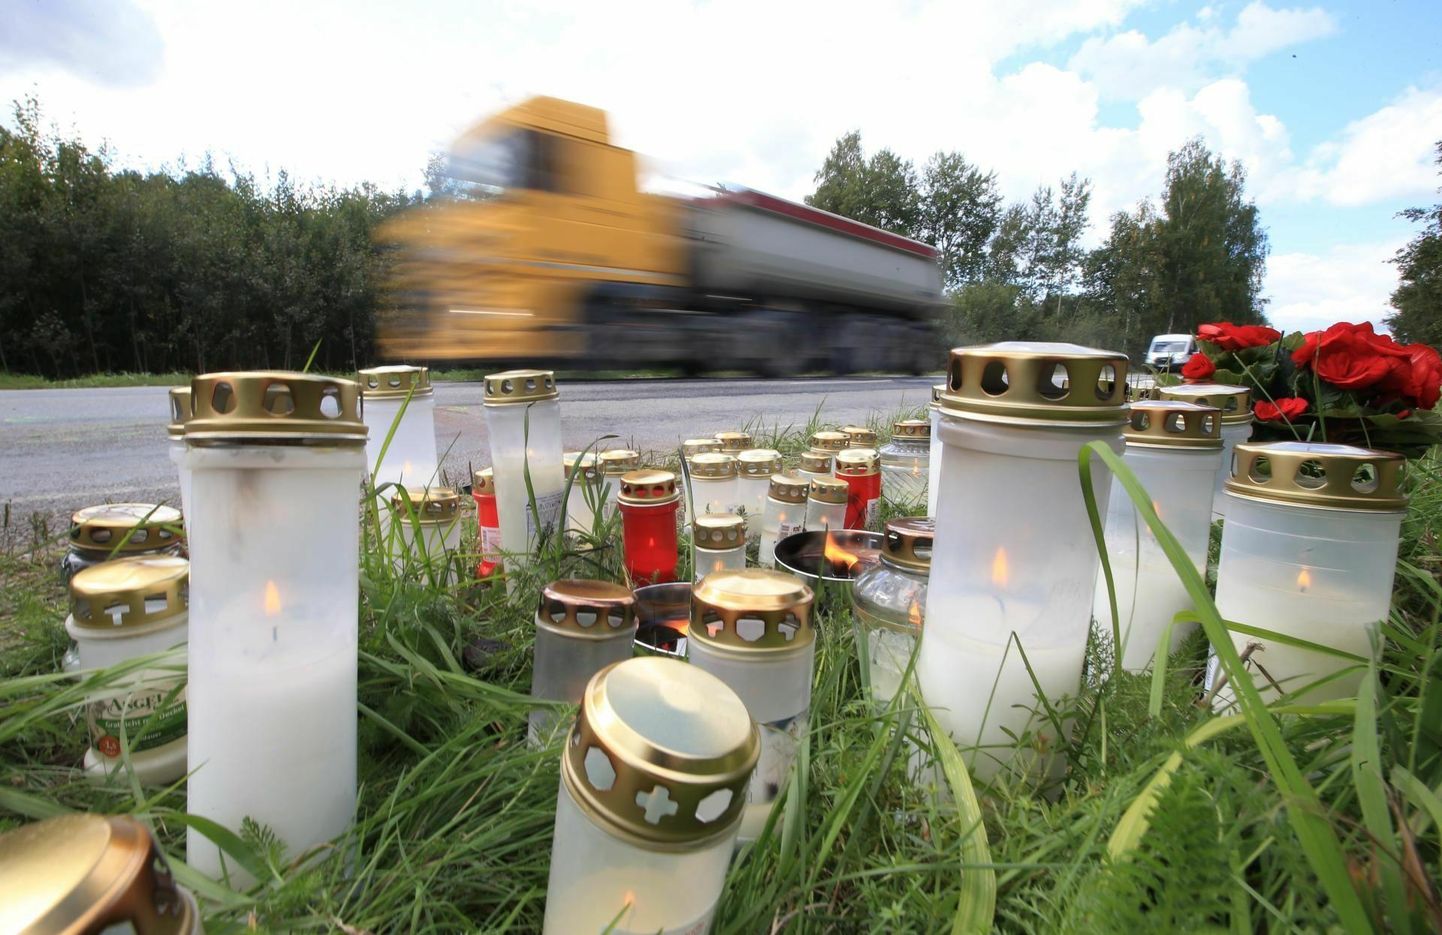 30. augustil 2021. aastal hukkusid Ülenurme–Roiu teel mootorrattaga sõitnud 17-aastane noormees ja 15-aastane neiu. Kohtupidamine õnnetuse asjaolude üle algas 2023. aasta oktoobri lõpus.